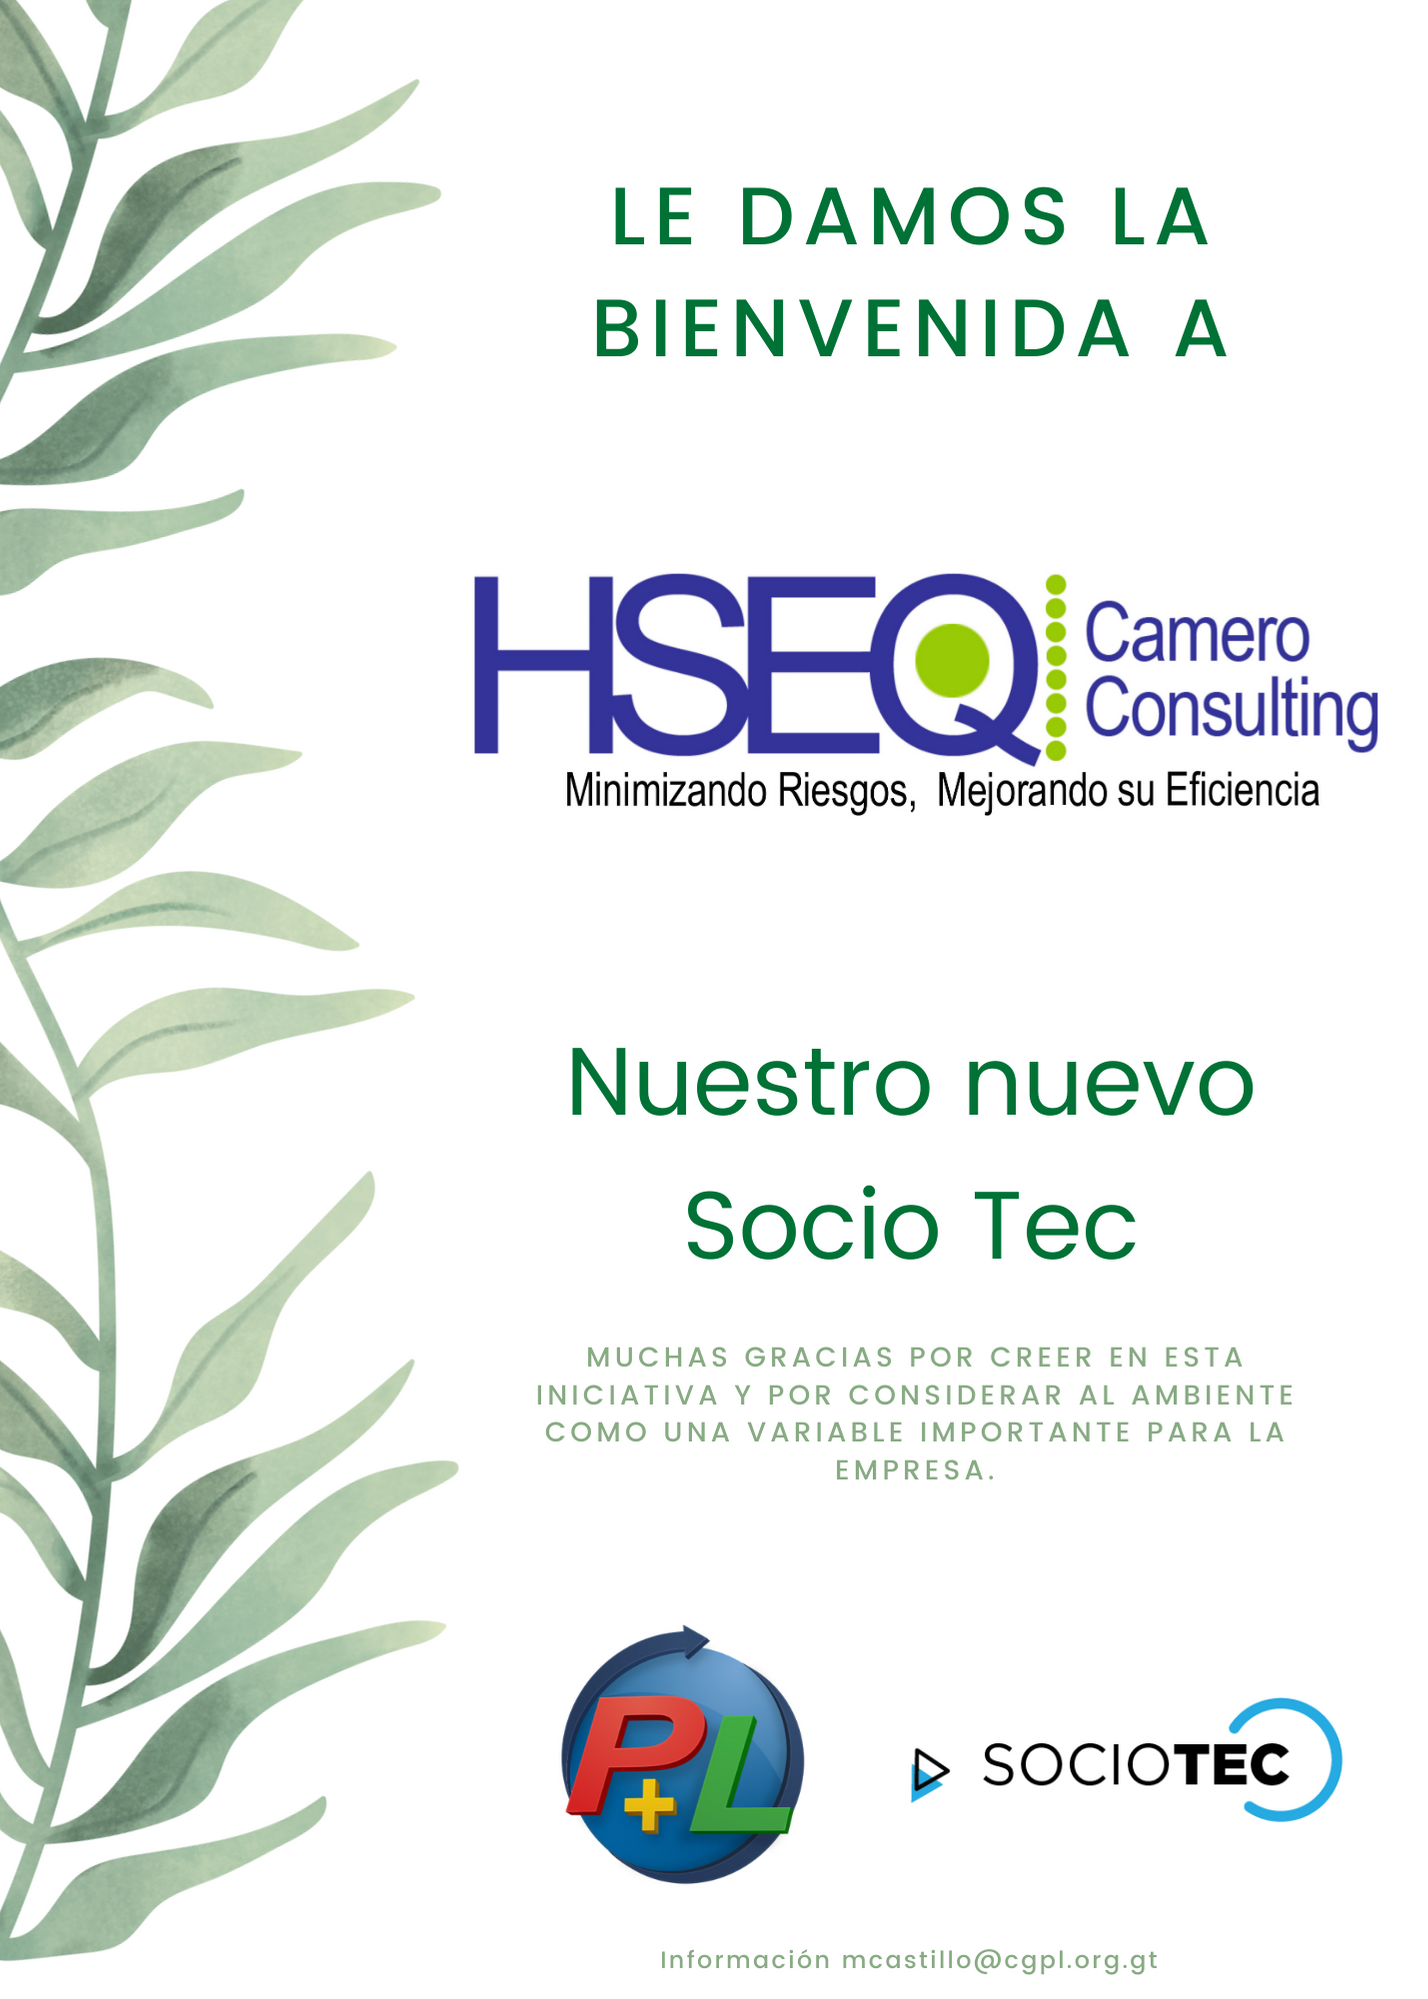 Le Damos La Bienvenida A Nuestro Nuevo Socio Tec, HSEQ Camero Consulting